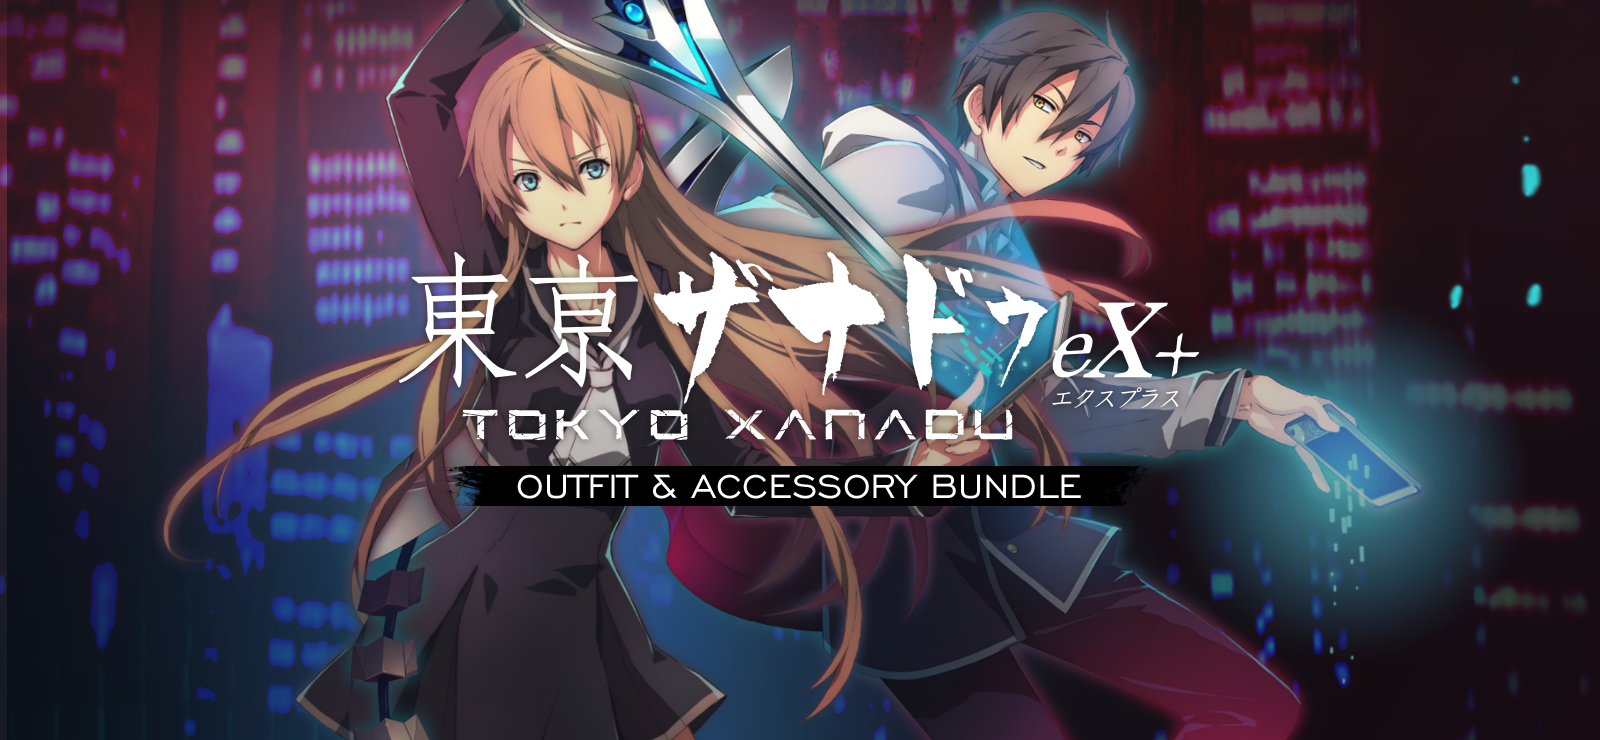 Tokyo Xanadu EX+ Outfit & Accessory Bundle